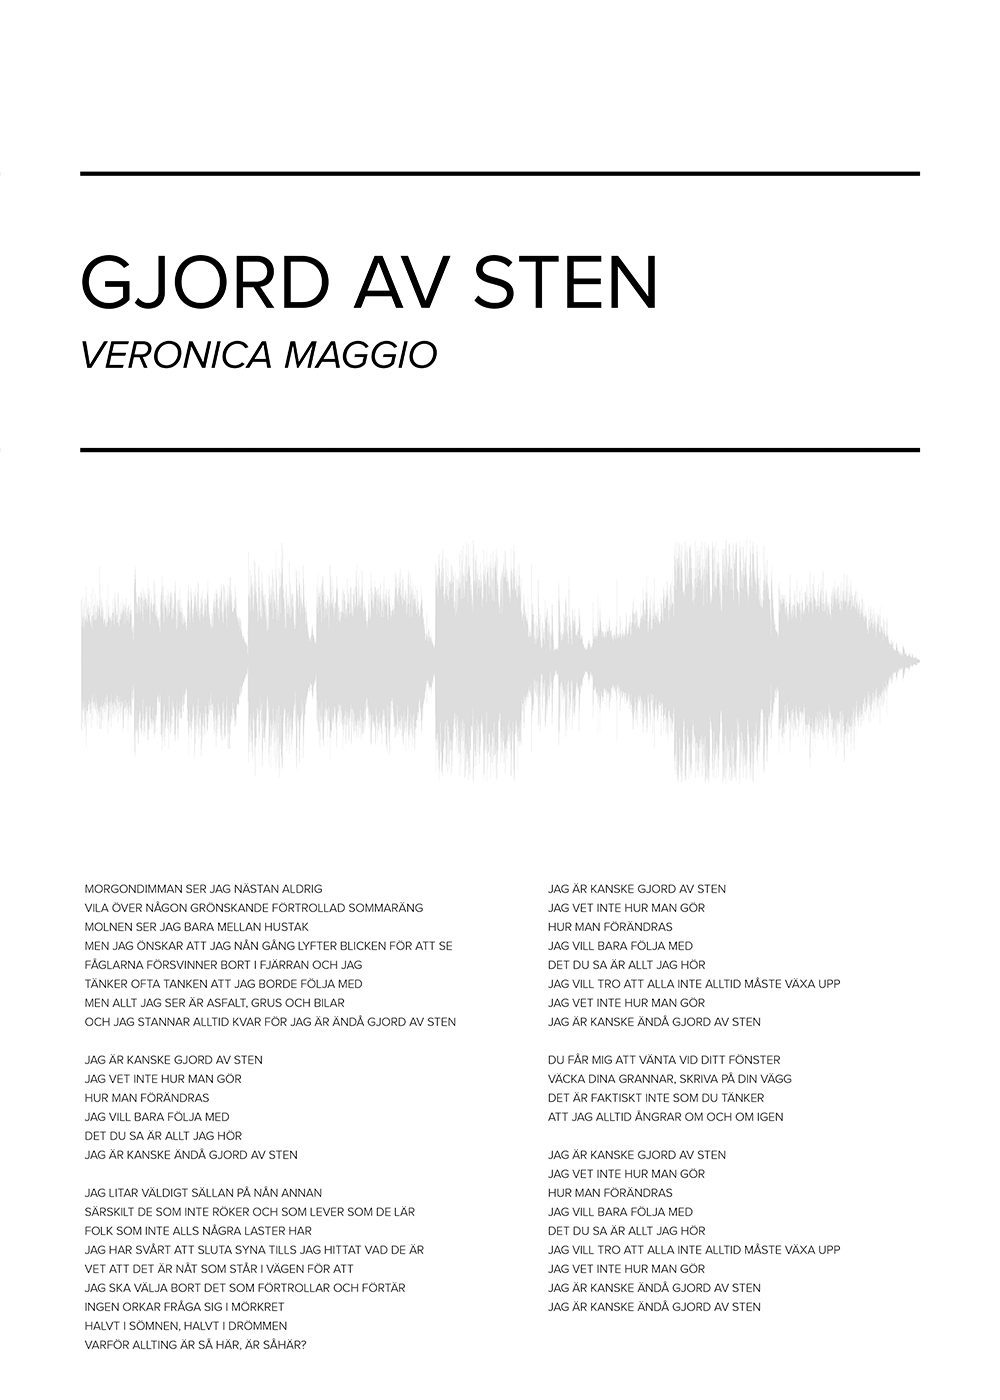 Veronica Maggio - Gjord av sten Poster